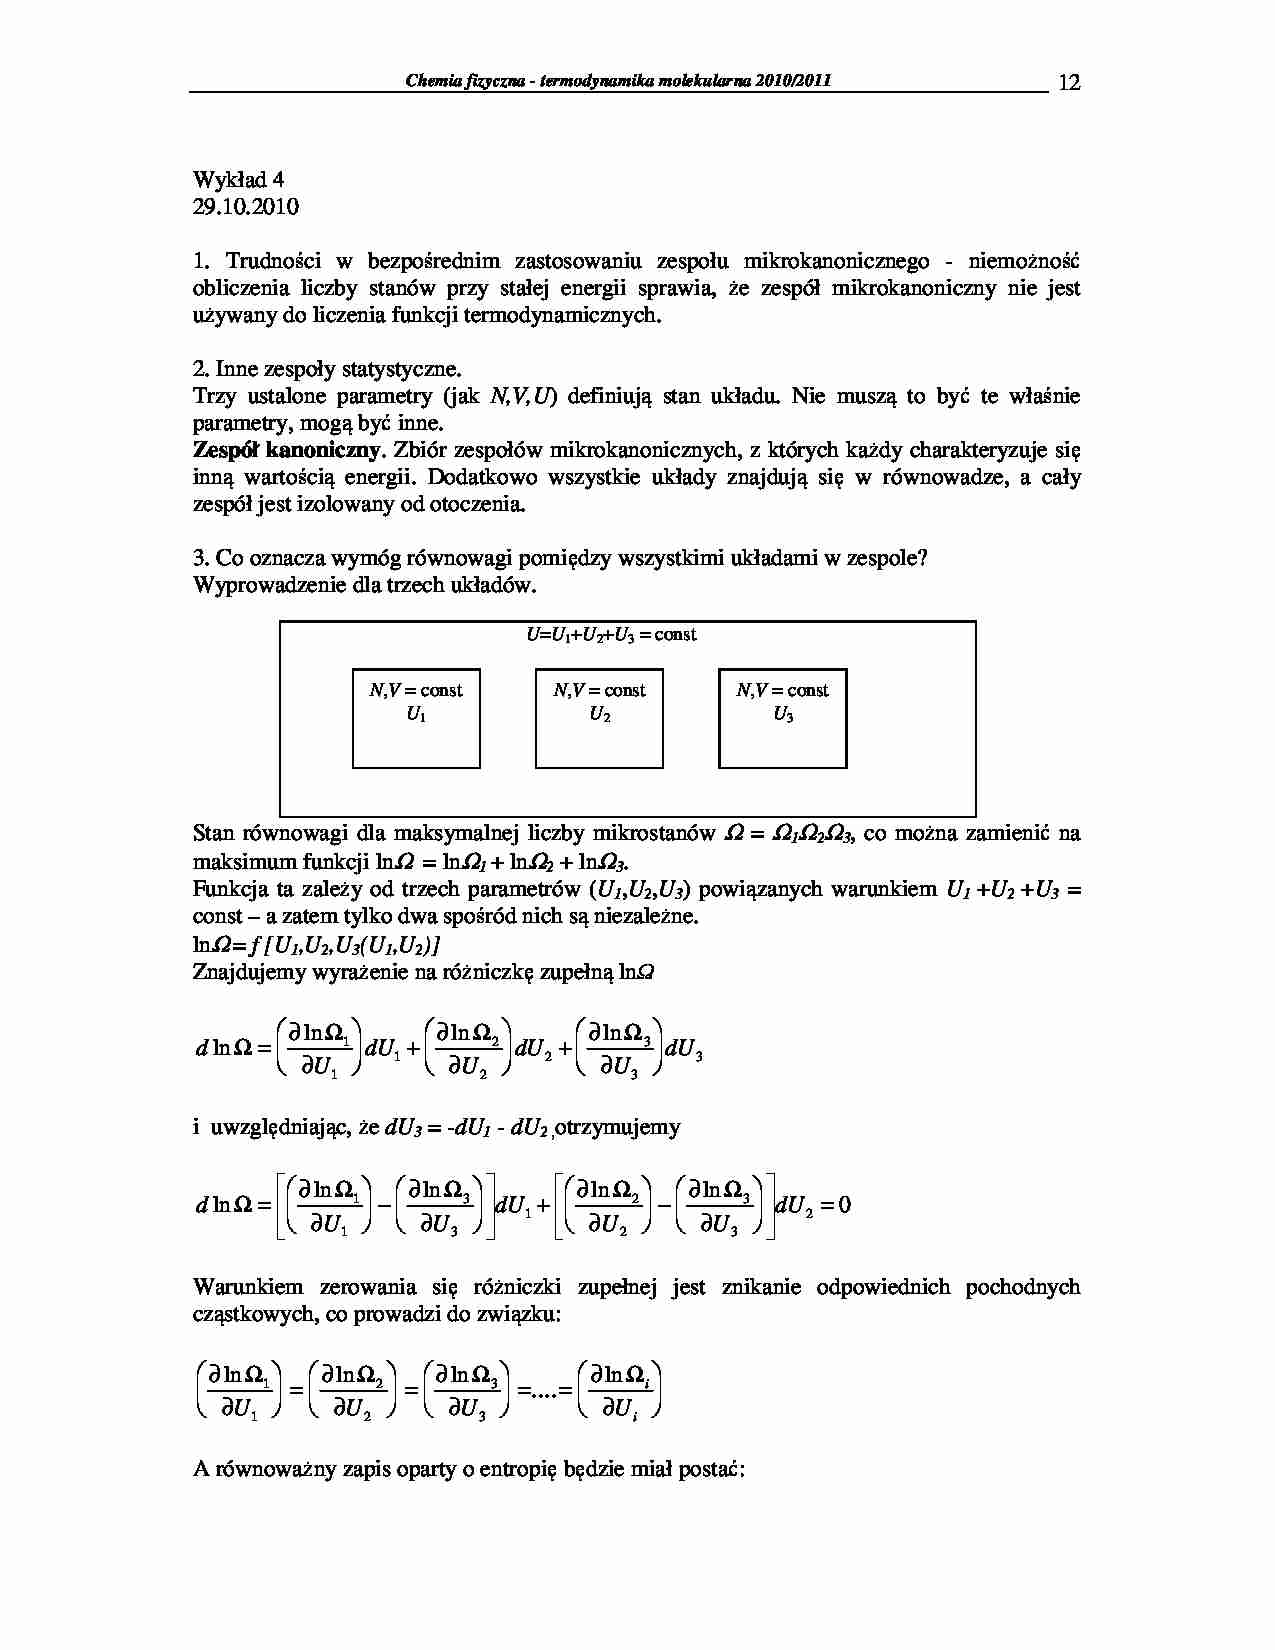 Chemia fizyczna - termodynamika molekularna 2009/2010-wykłady18 - strona 1